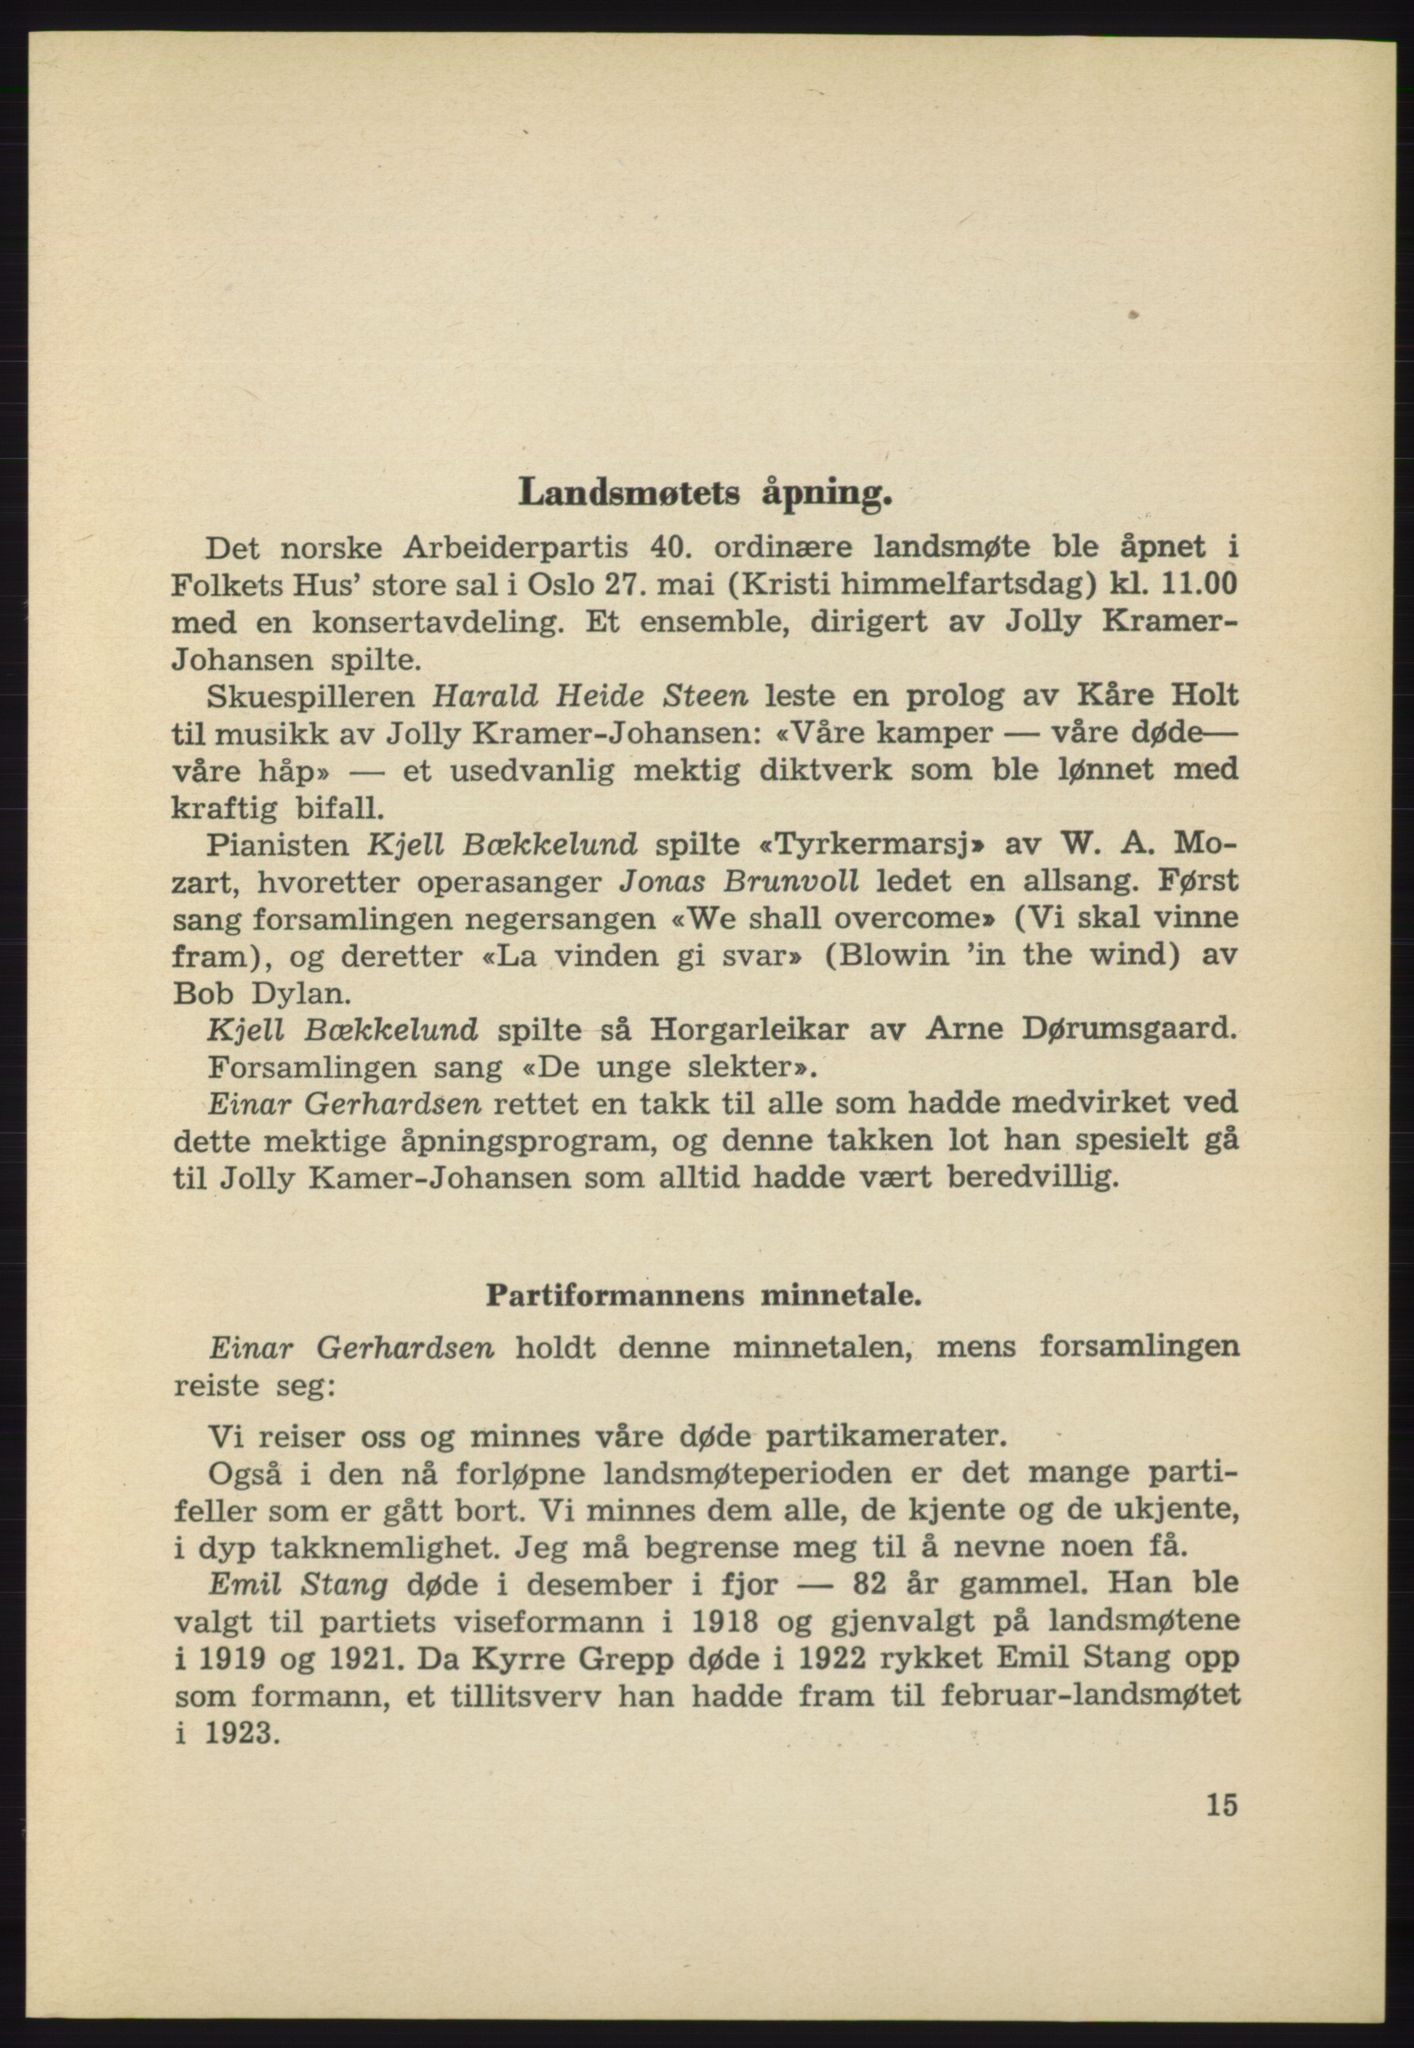 AAB, Det norske Arbeiderparti - publikasjoner, -/-: Protokoll over forhandlingene på det 40. ordinære landsmøte 27.-29. mai 1965 i Oslo, 1965, p. 15